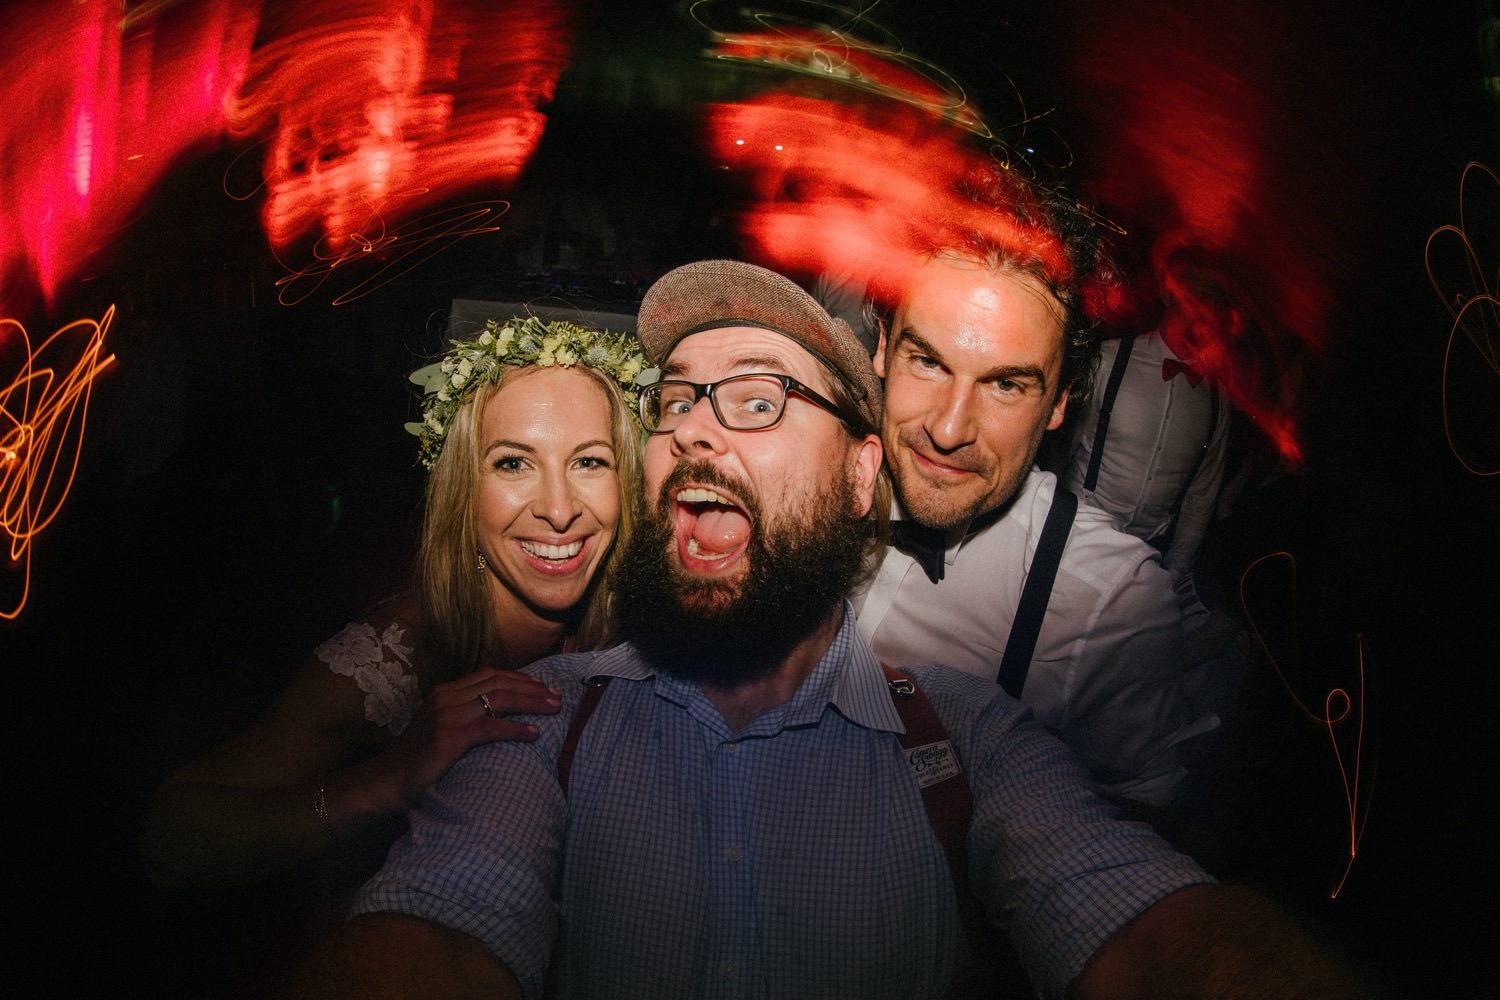 Ein Selfie des Hochzeitsfotografen Till Gläser aus Hamburg zusammen mit dem Brautpaar auf der Tanzfläche, aufgenommen mit einem Fisheye-Objektiv. Die Langzeitbelichtung erzeugt dynamische und faszinierende Lichteffekte, die die Stimmung der Feier einfangen und dem Bild eine besondere Atmosphäre verleihen.